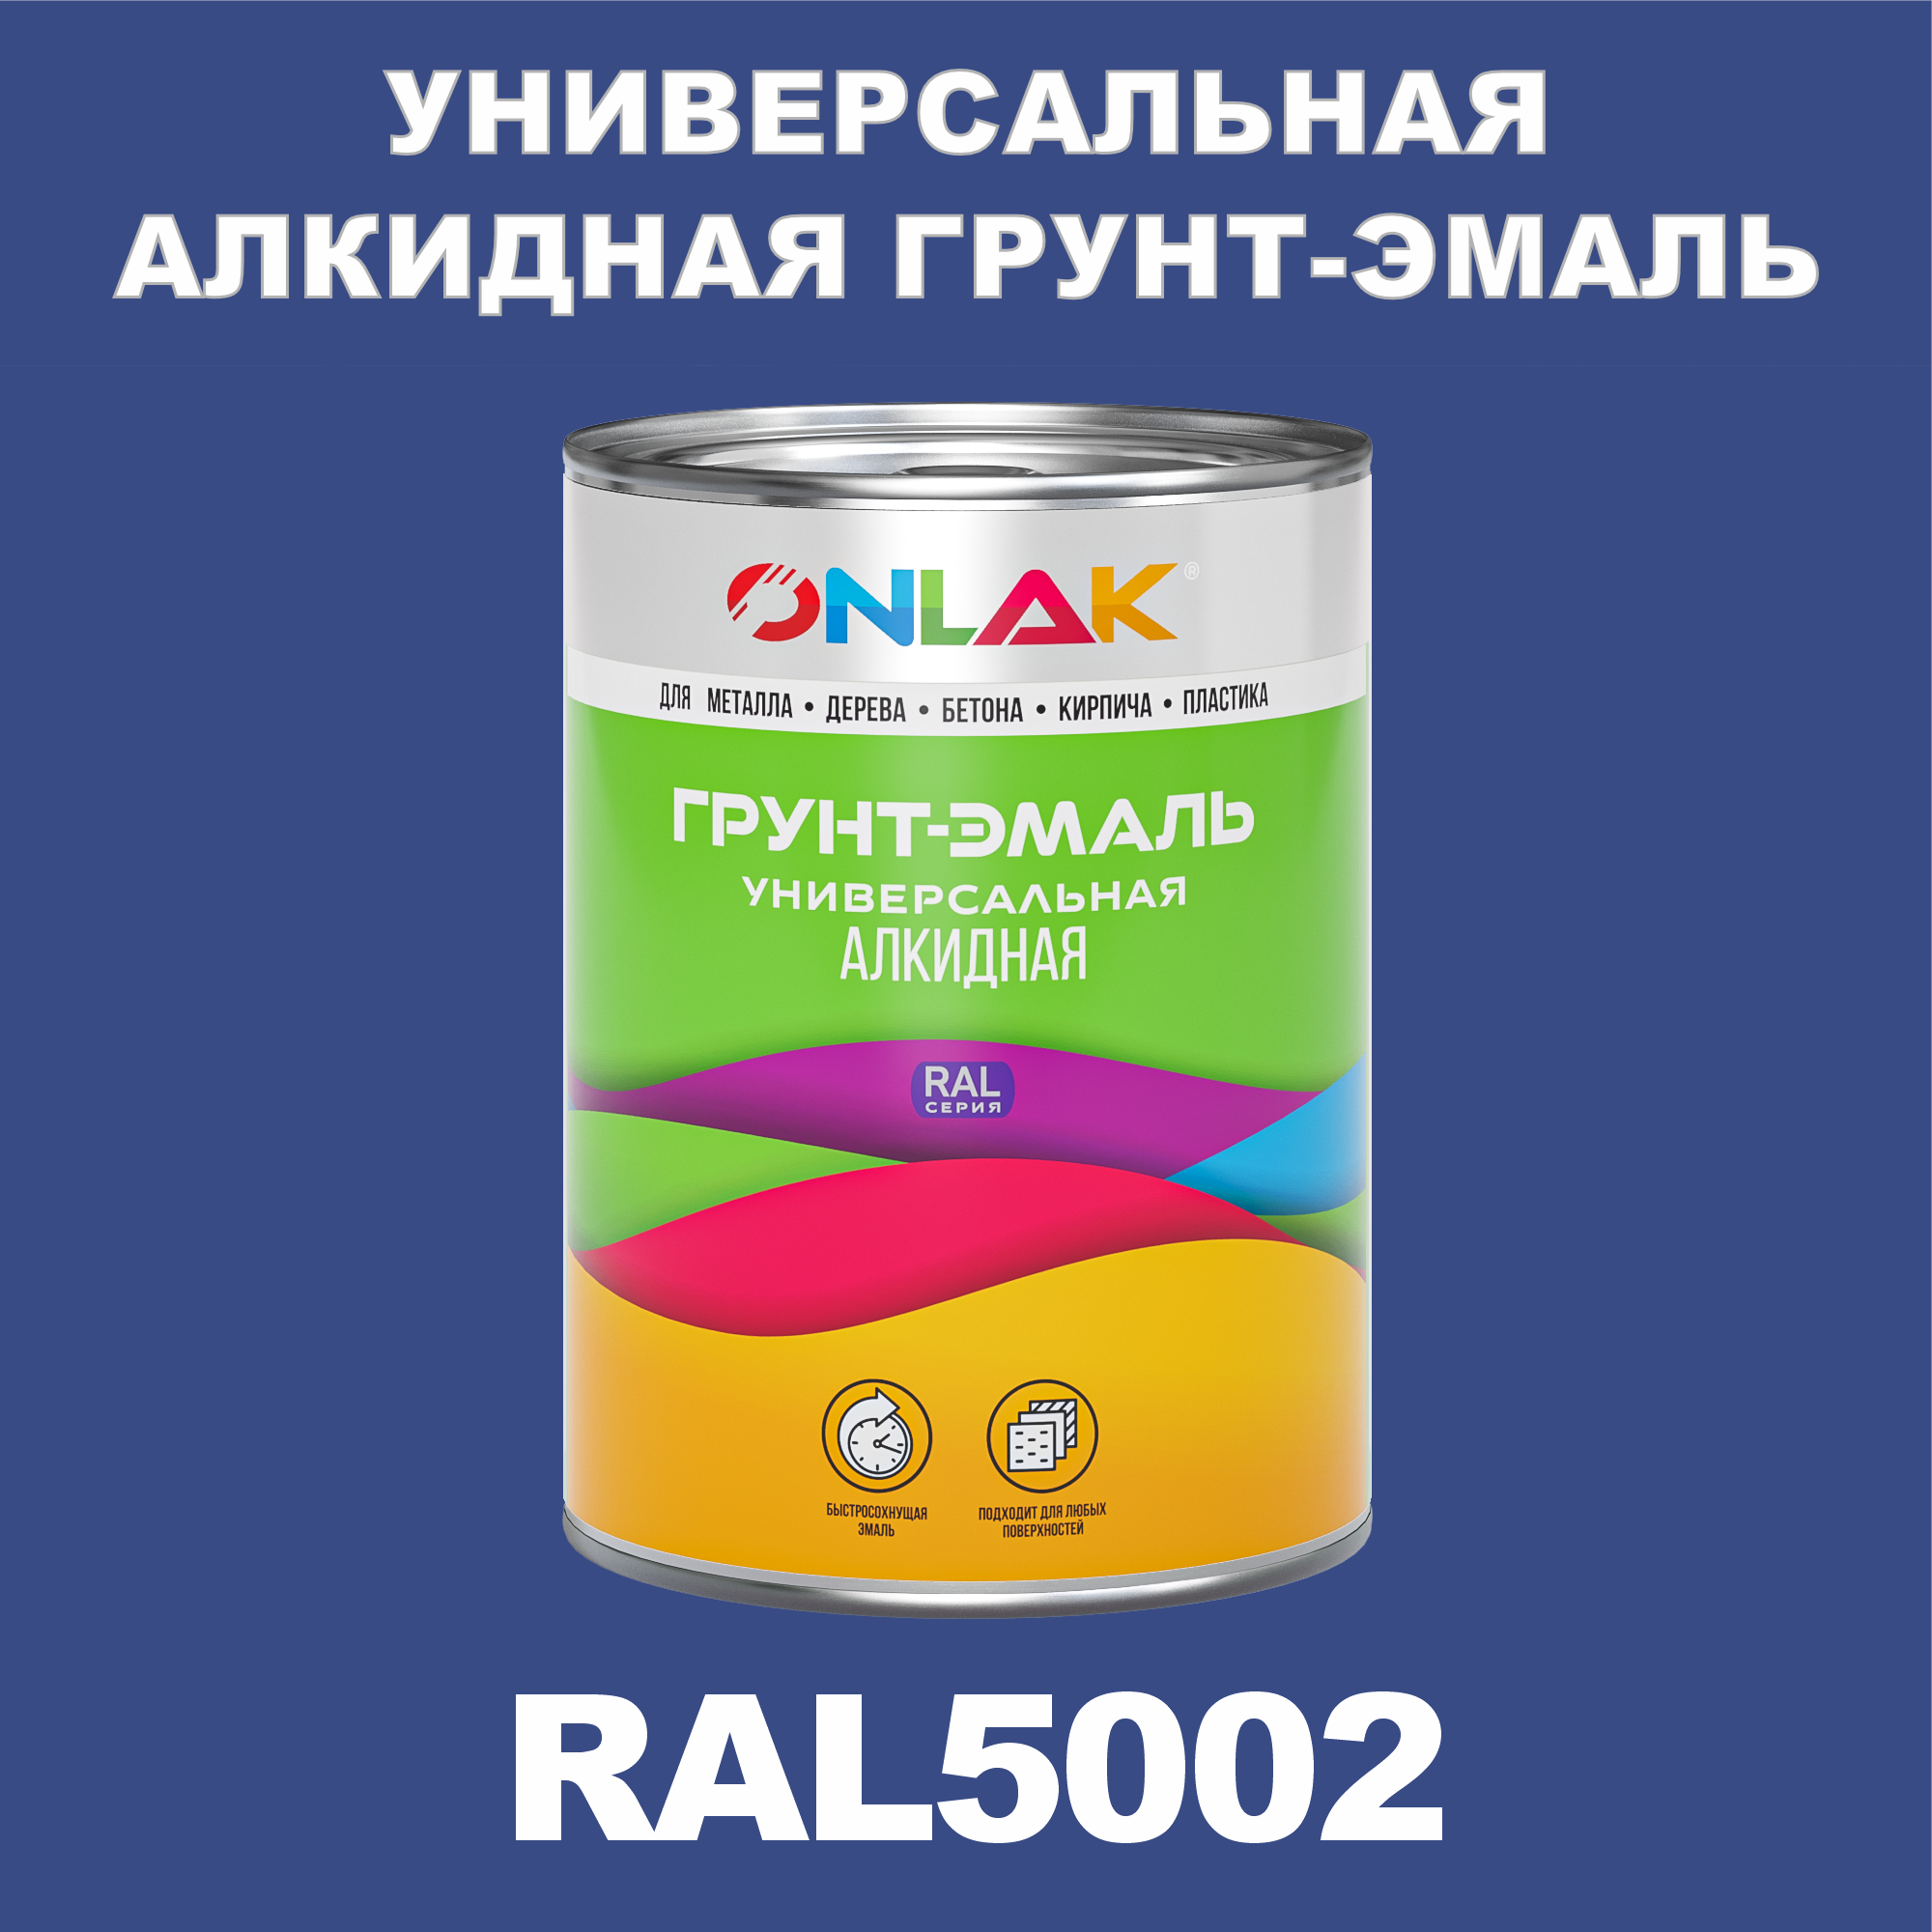 Грунт-эмаль ONLAK 1К RAL5002 антикоррозионная алкидная по металлу по ржавчине 1 кг грунт эмаль yollo по ржавчине алкидная синяя 0 9 кг